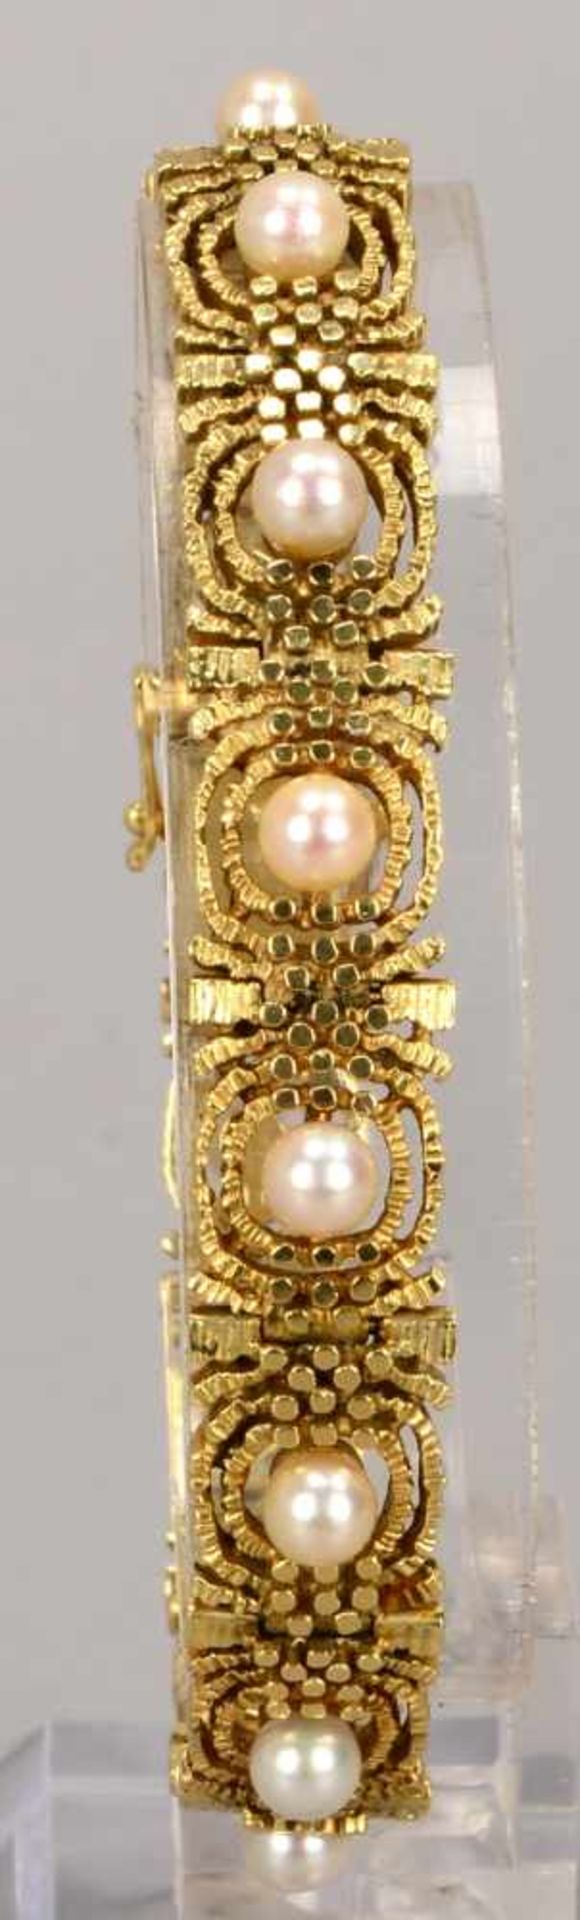 Armband, 585 GG, mit Perlenbesatz, mit Kastenschließe/Schließe mit doppelter Sicherheitsacht; - Bild 2 aus 2